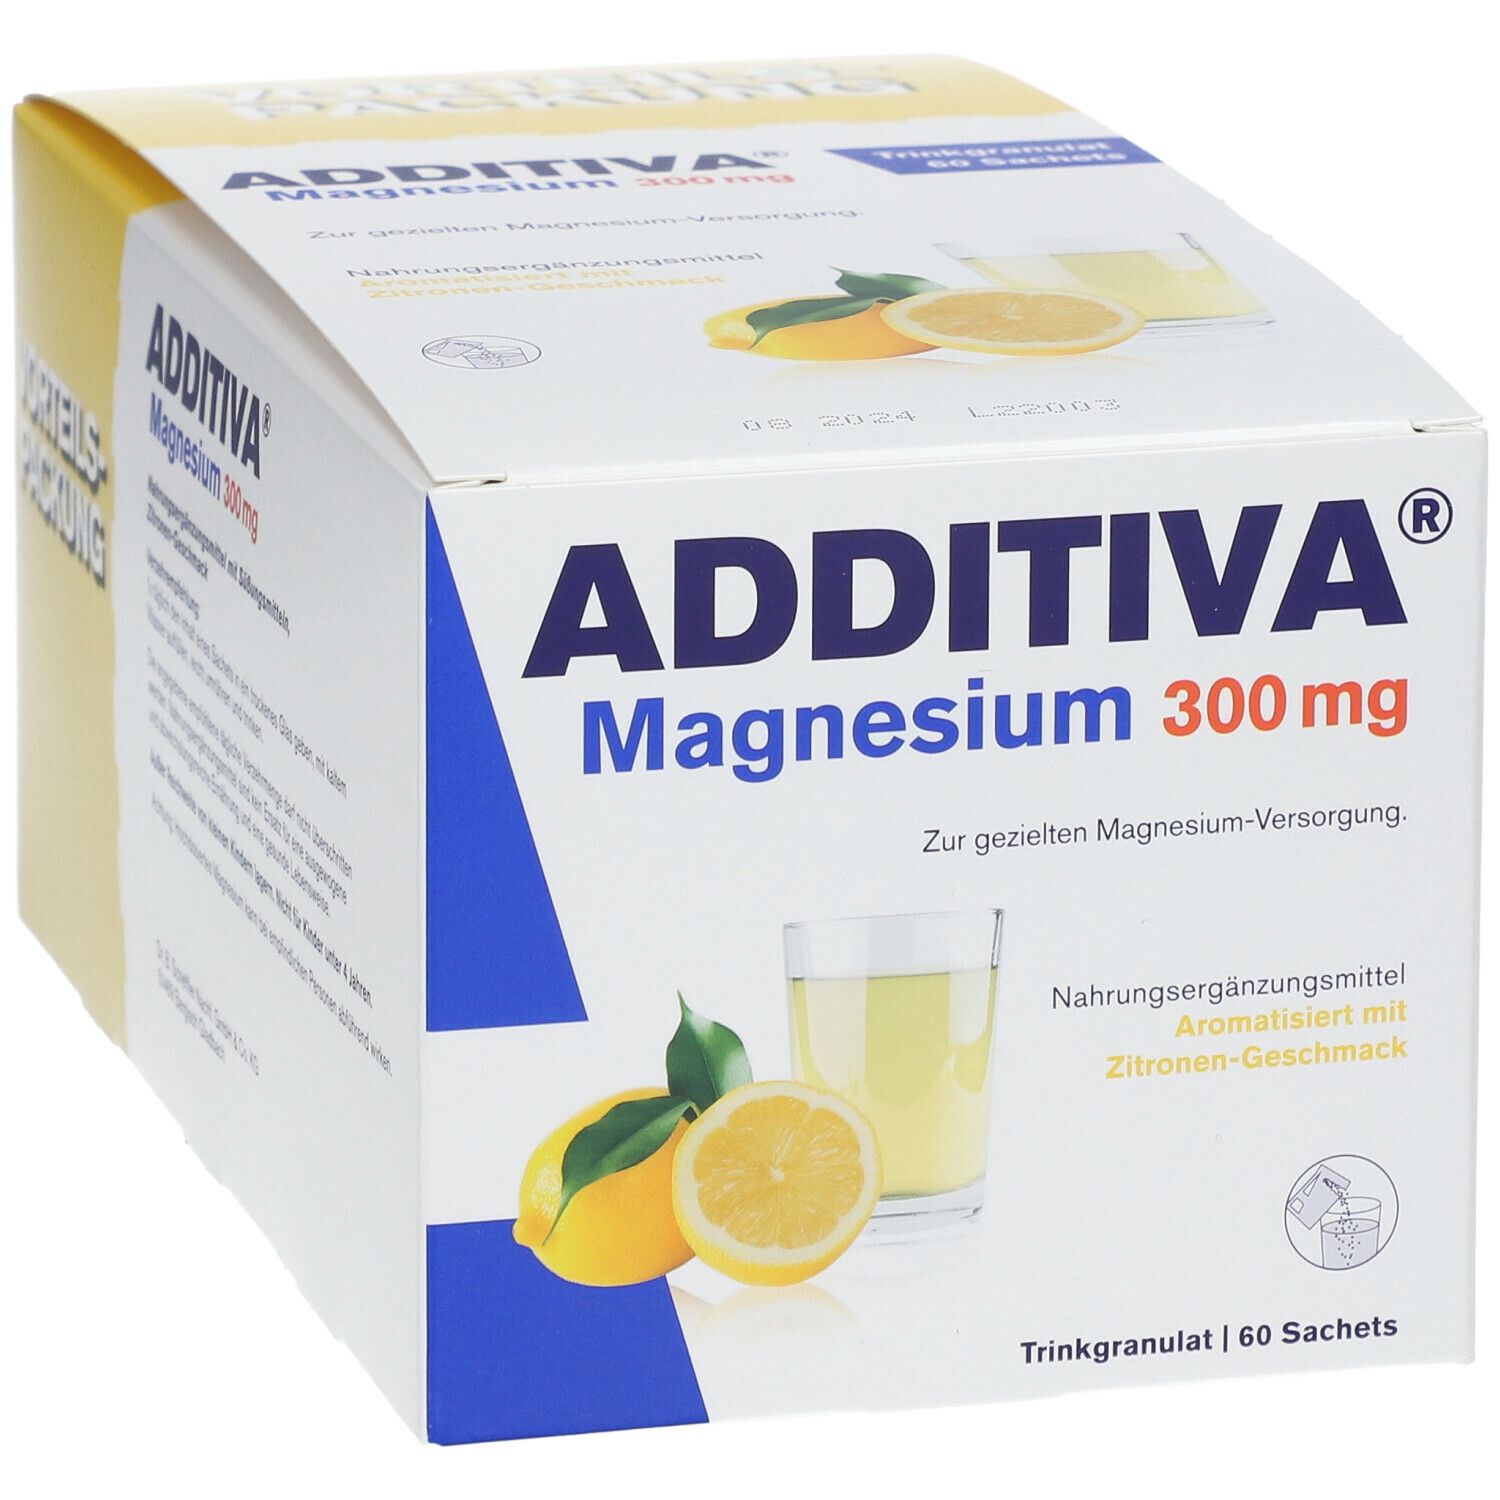 ADDITIVA® Magnesium 300 mg